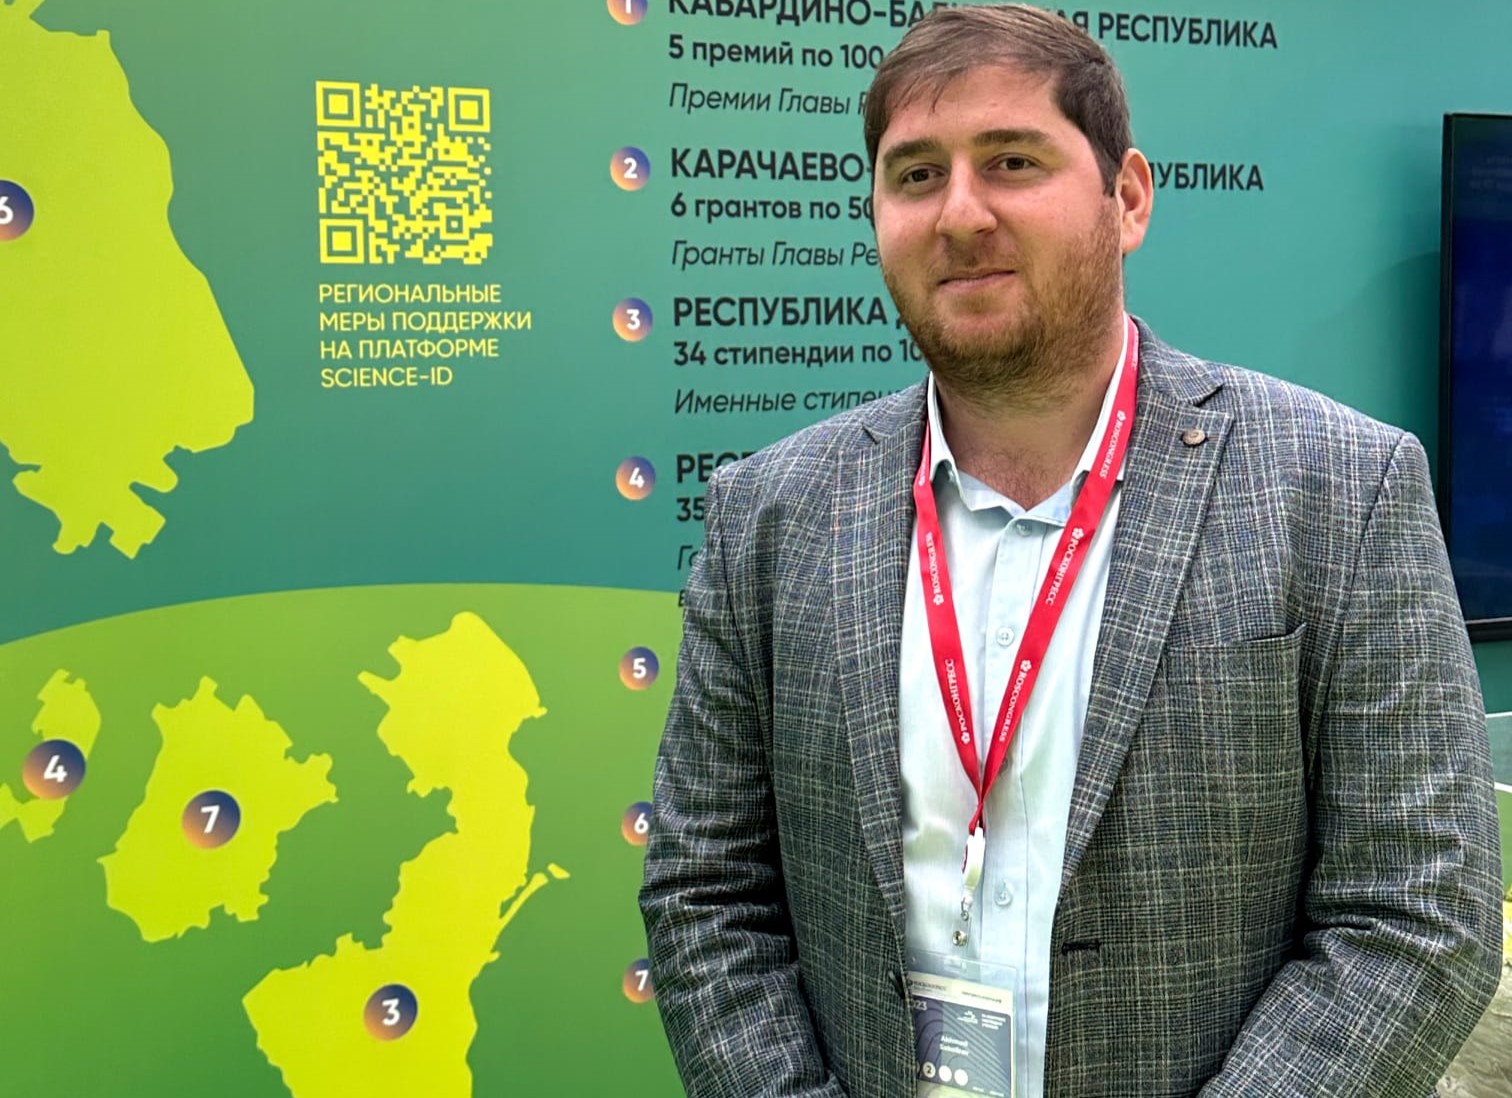 Ахмед Саболиров стал лауреатом премии Главы Кабардино-Балкарской Республики